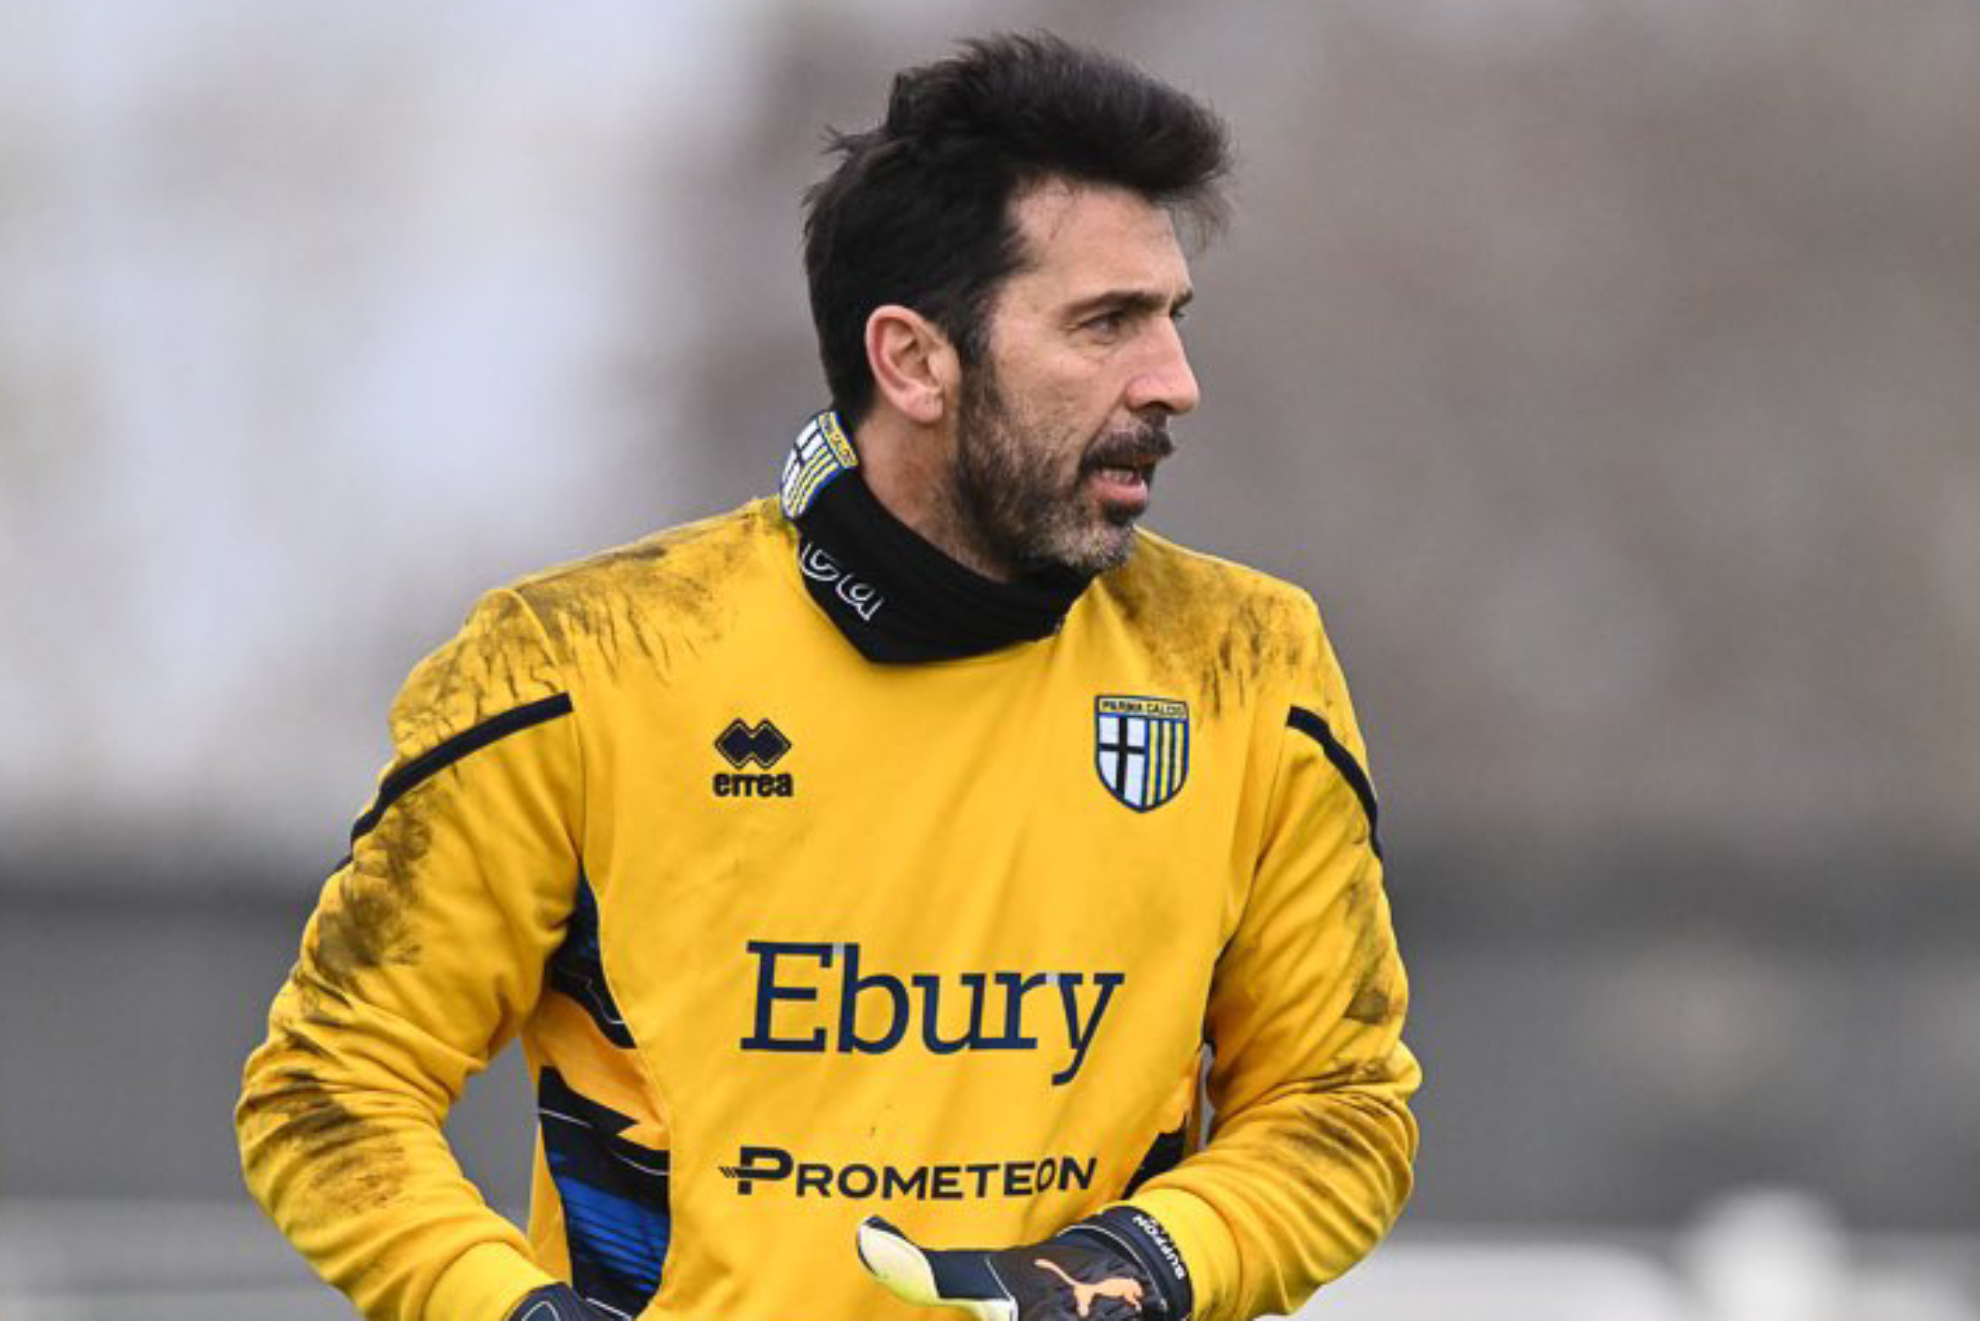 Buffon debutó con el Parma hace 28 años | @gianluigibuffon